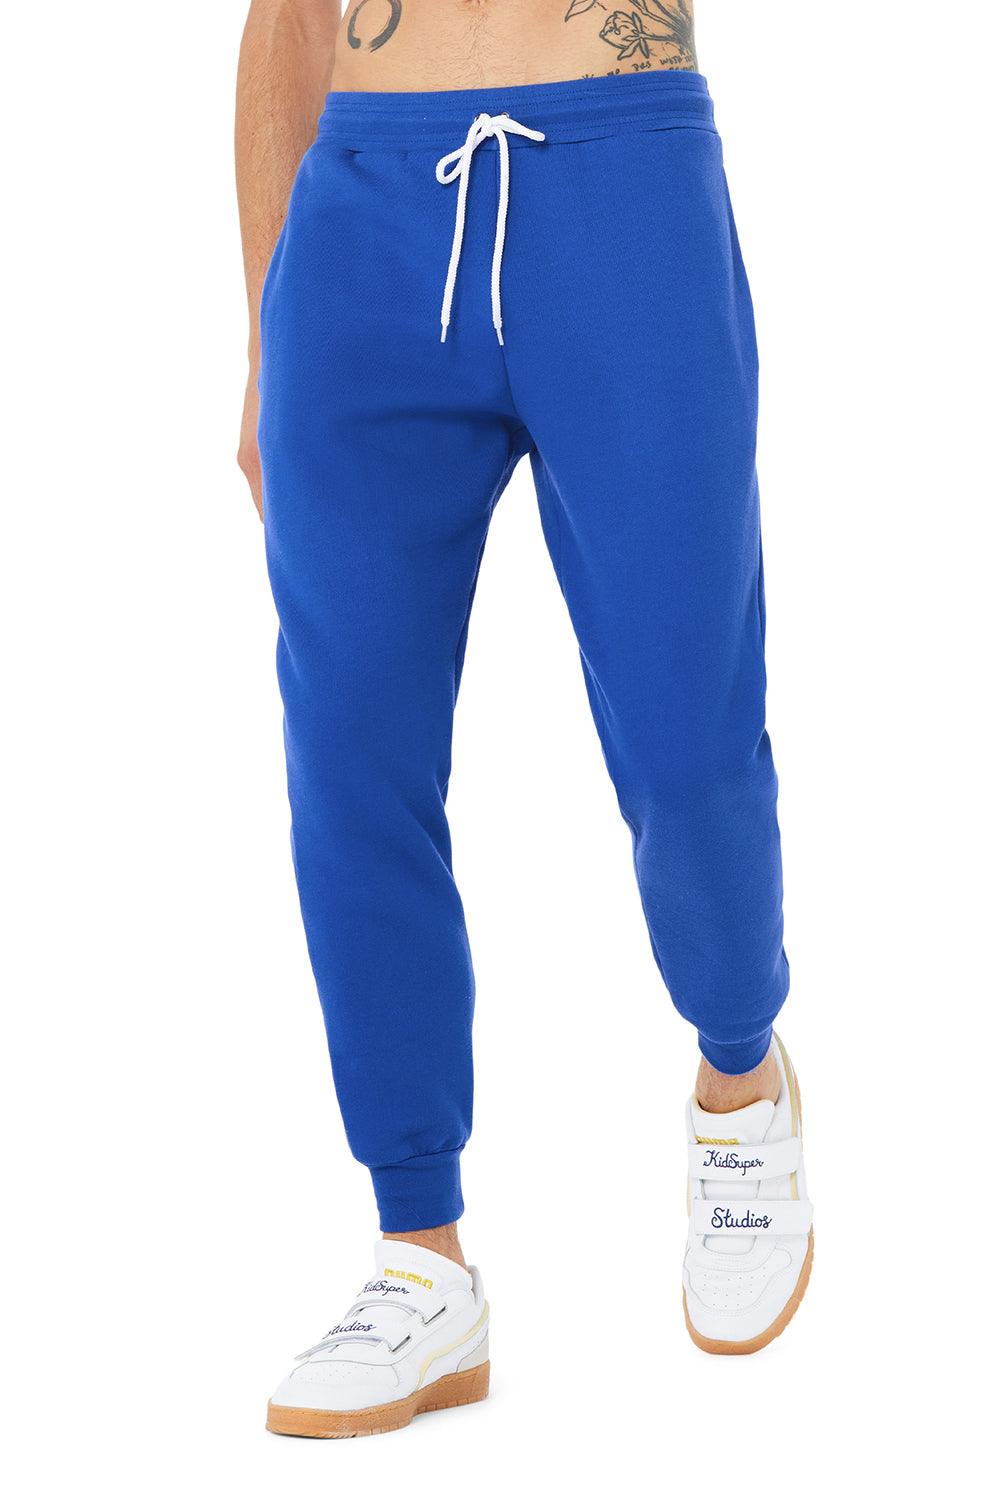 Bella + Canvas BC3727 Mens Jogger Sweatpants w/ Pockets True Royal Blue Model Front